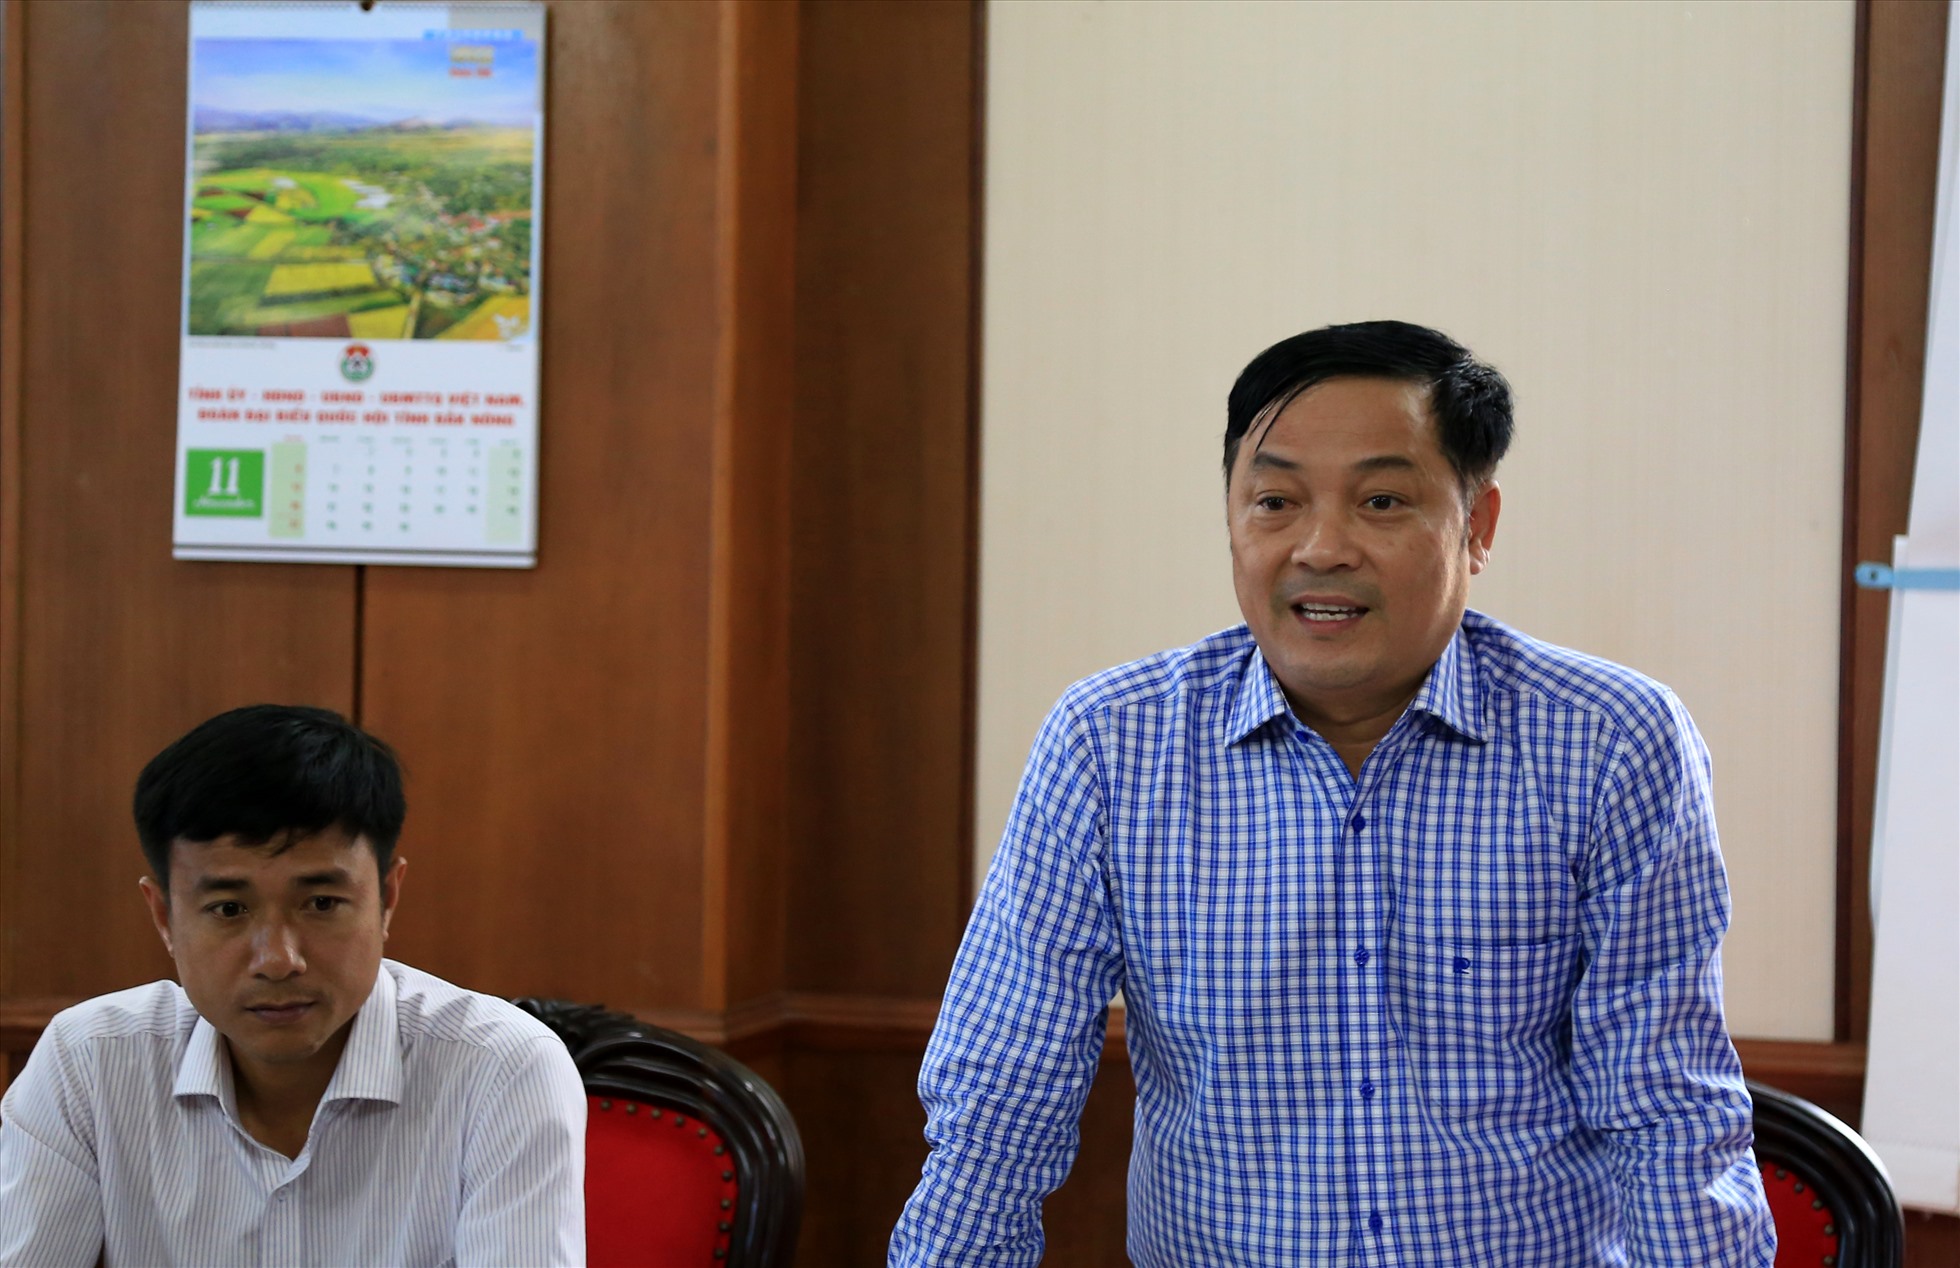 Phó chủ tịch UBND tỉnh Đắk Nông Lê Trọng Yên chỉ ra những bất cập, khó khăn trong việc quản lý nguồn gốc đất đai từ nông lâm trường. Ảnh: Lê Phước